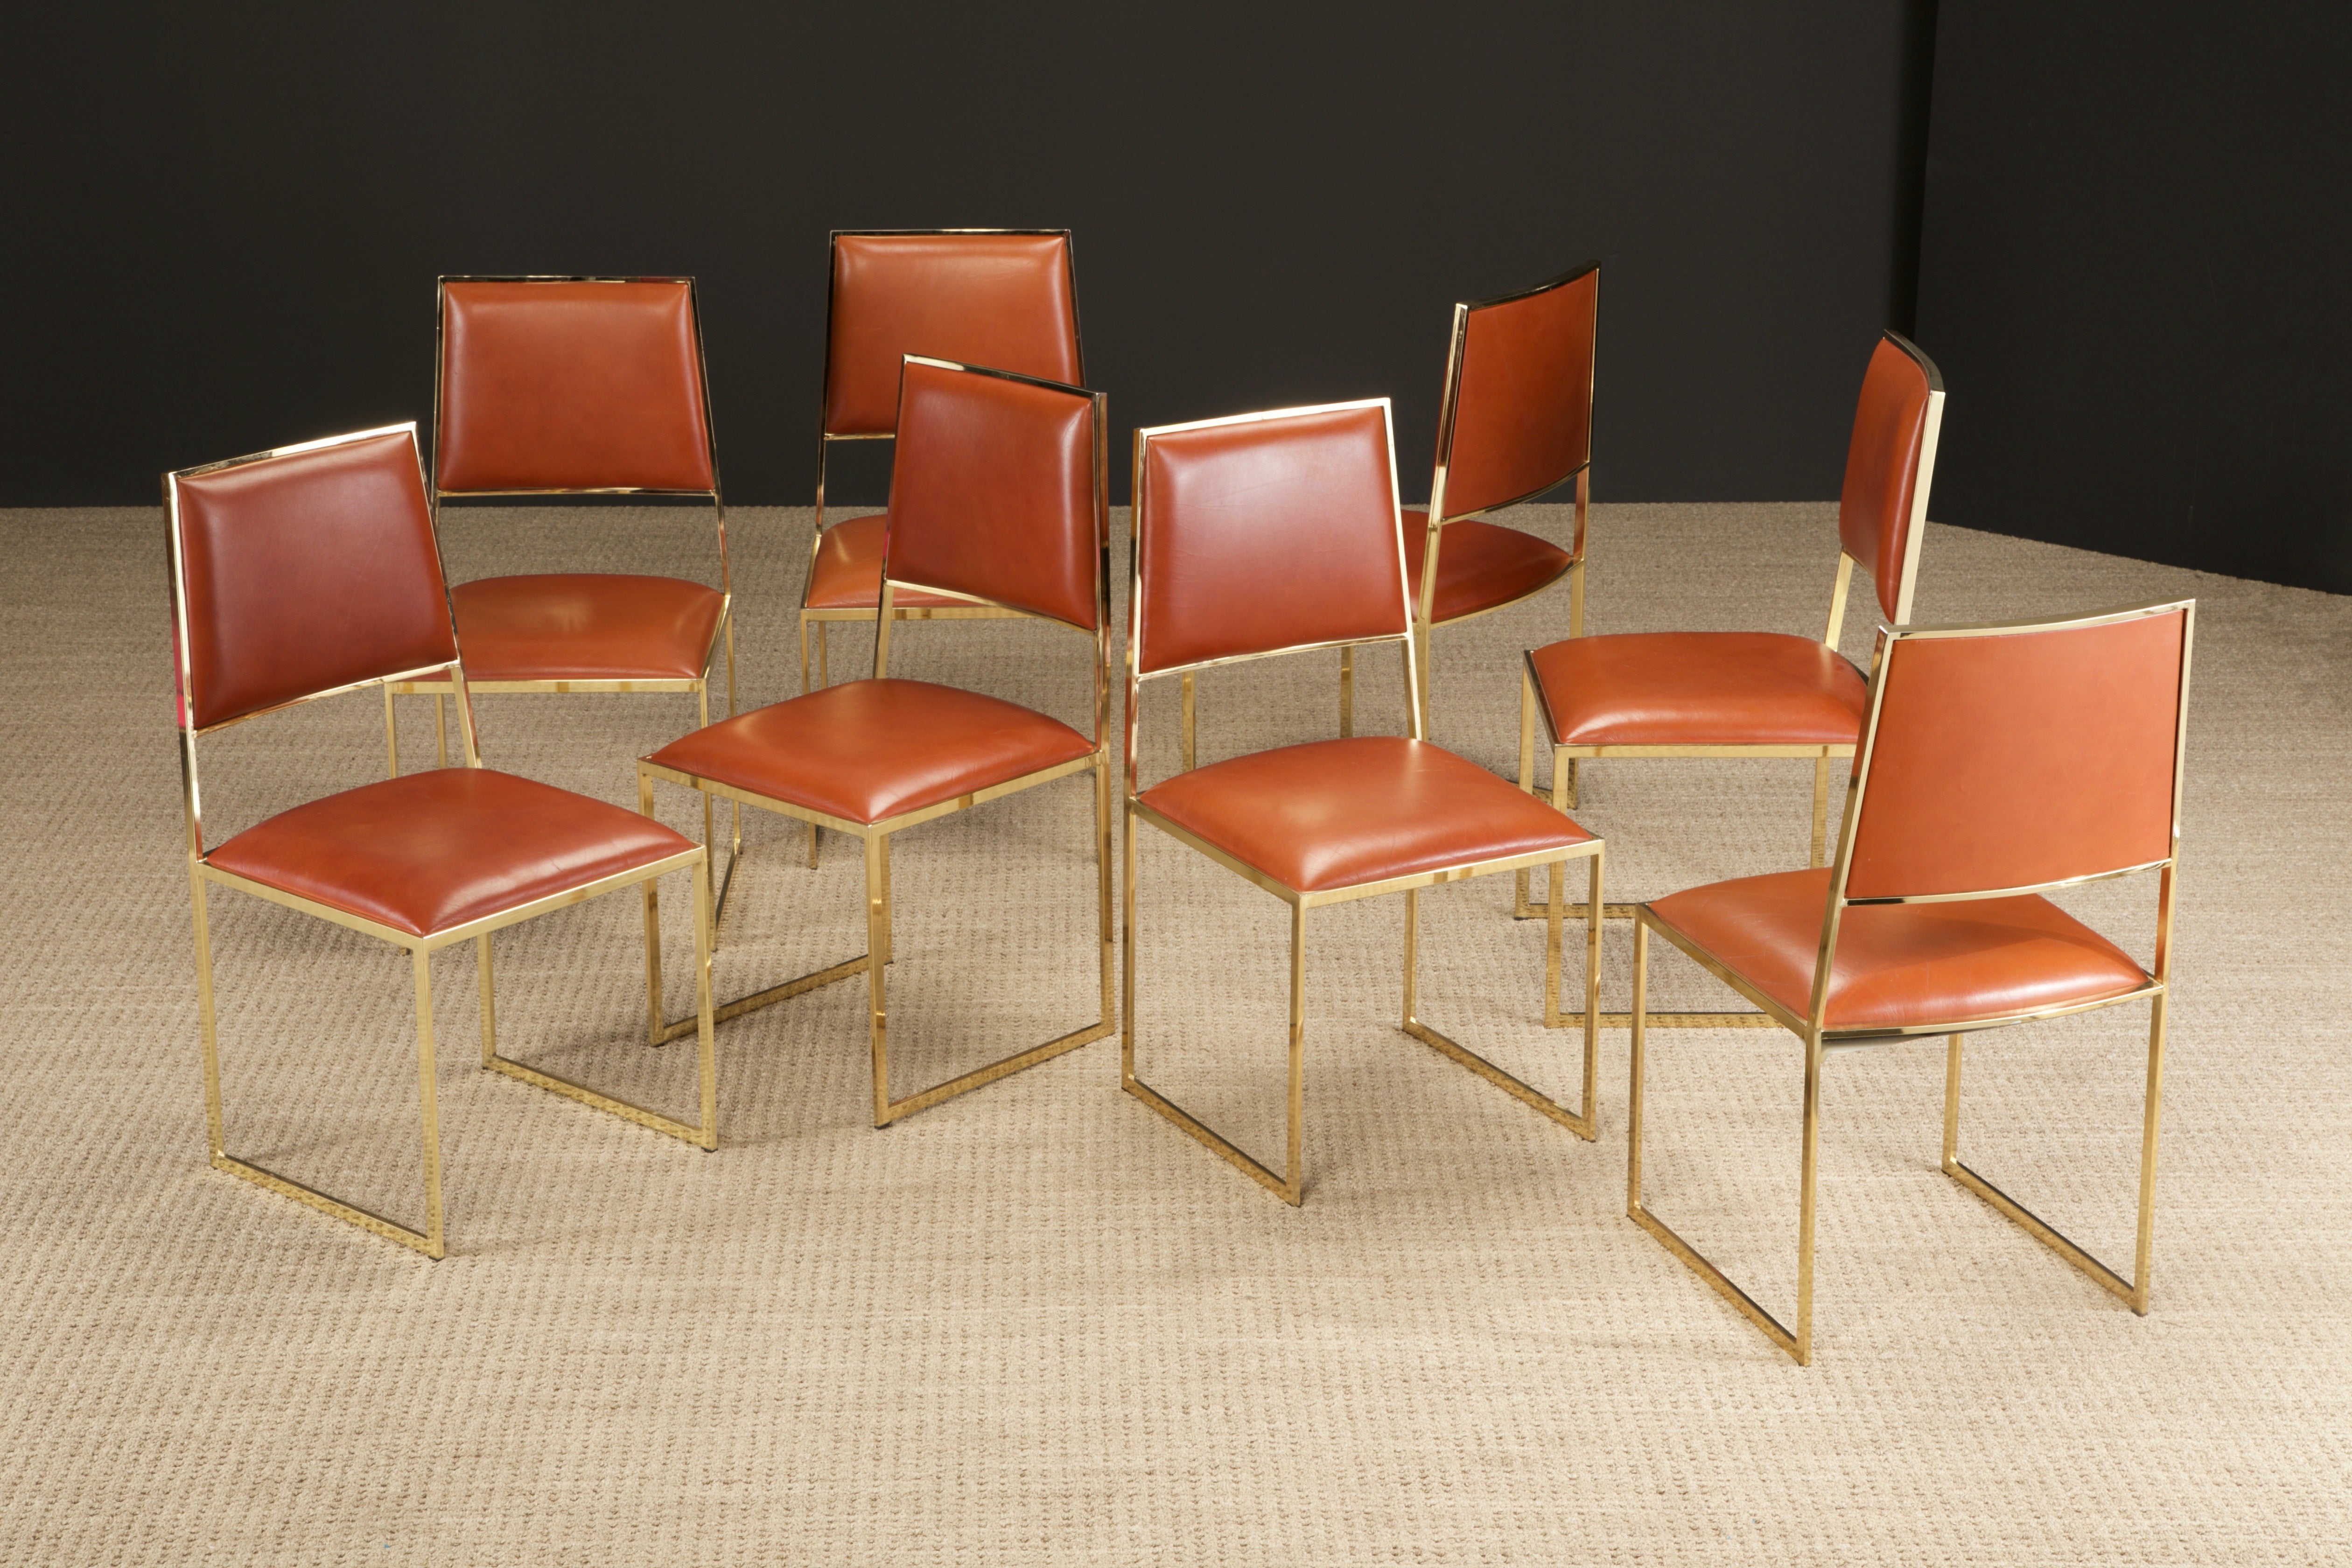 Magnifique ensemble de huit (8) chaises de salle à manger par Willy Rizzo pour CIRCA, Italie, vers 1970, avec de superbes cadres cubistes en laiton et du cuir de couleur cognac. Signé avec des étiquettes Cidue indiquant 